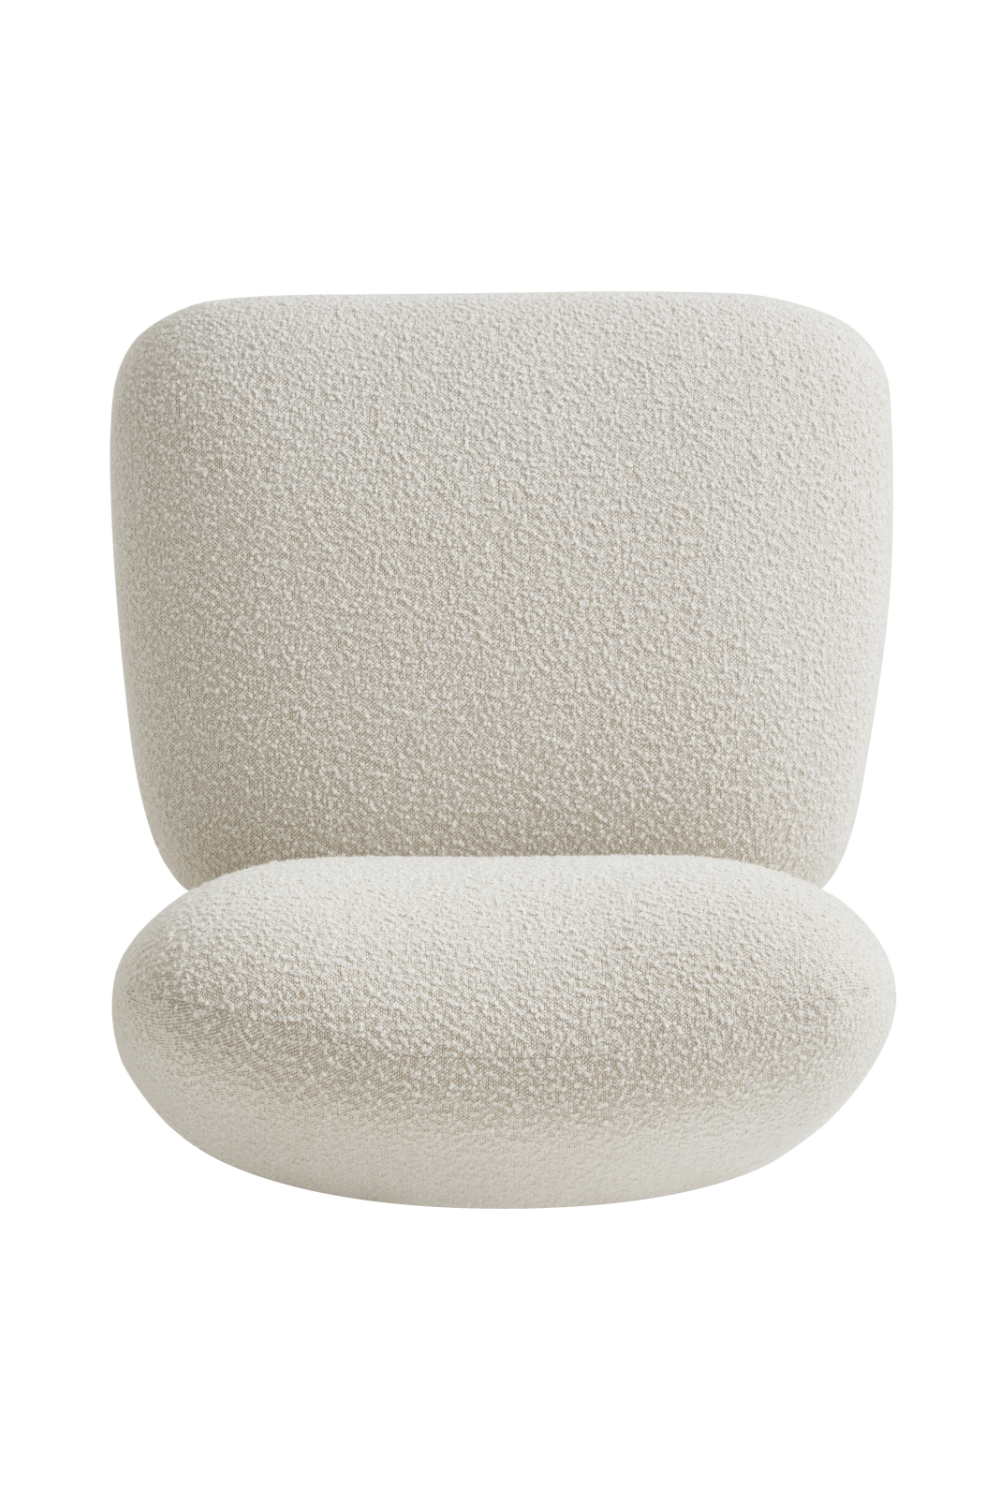 Off-White Bouclé Japandi Accent Chair | Andrew Martin Bella | Oroa.com